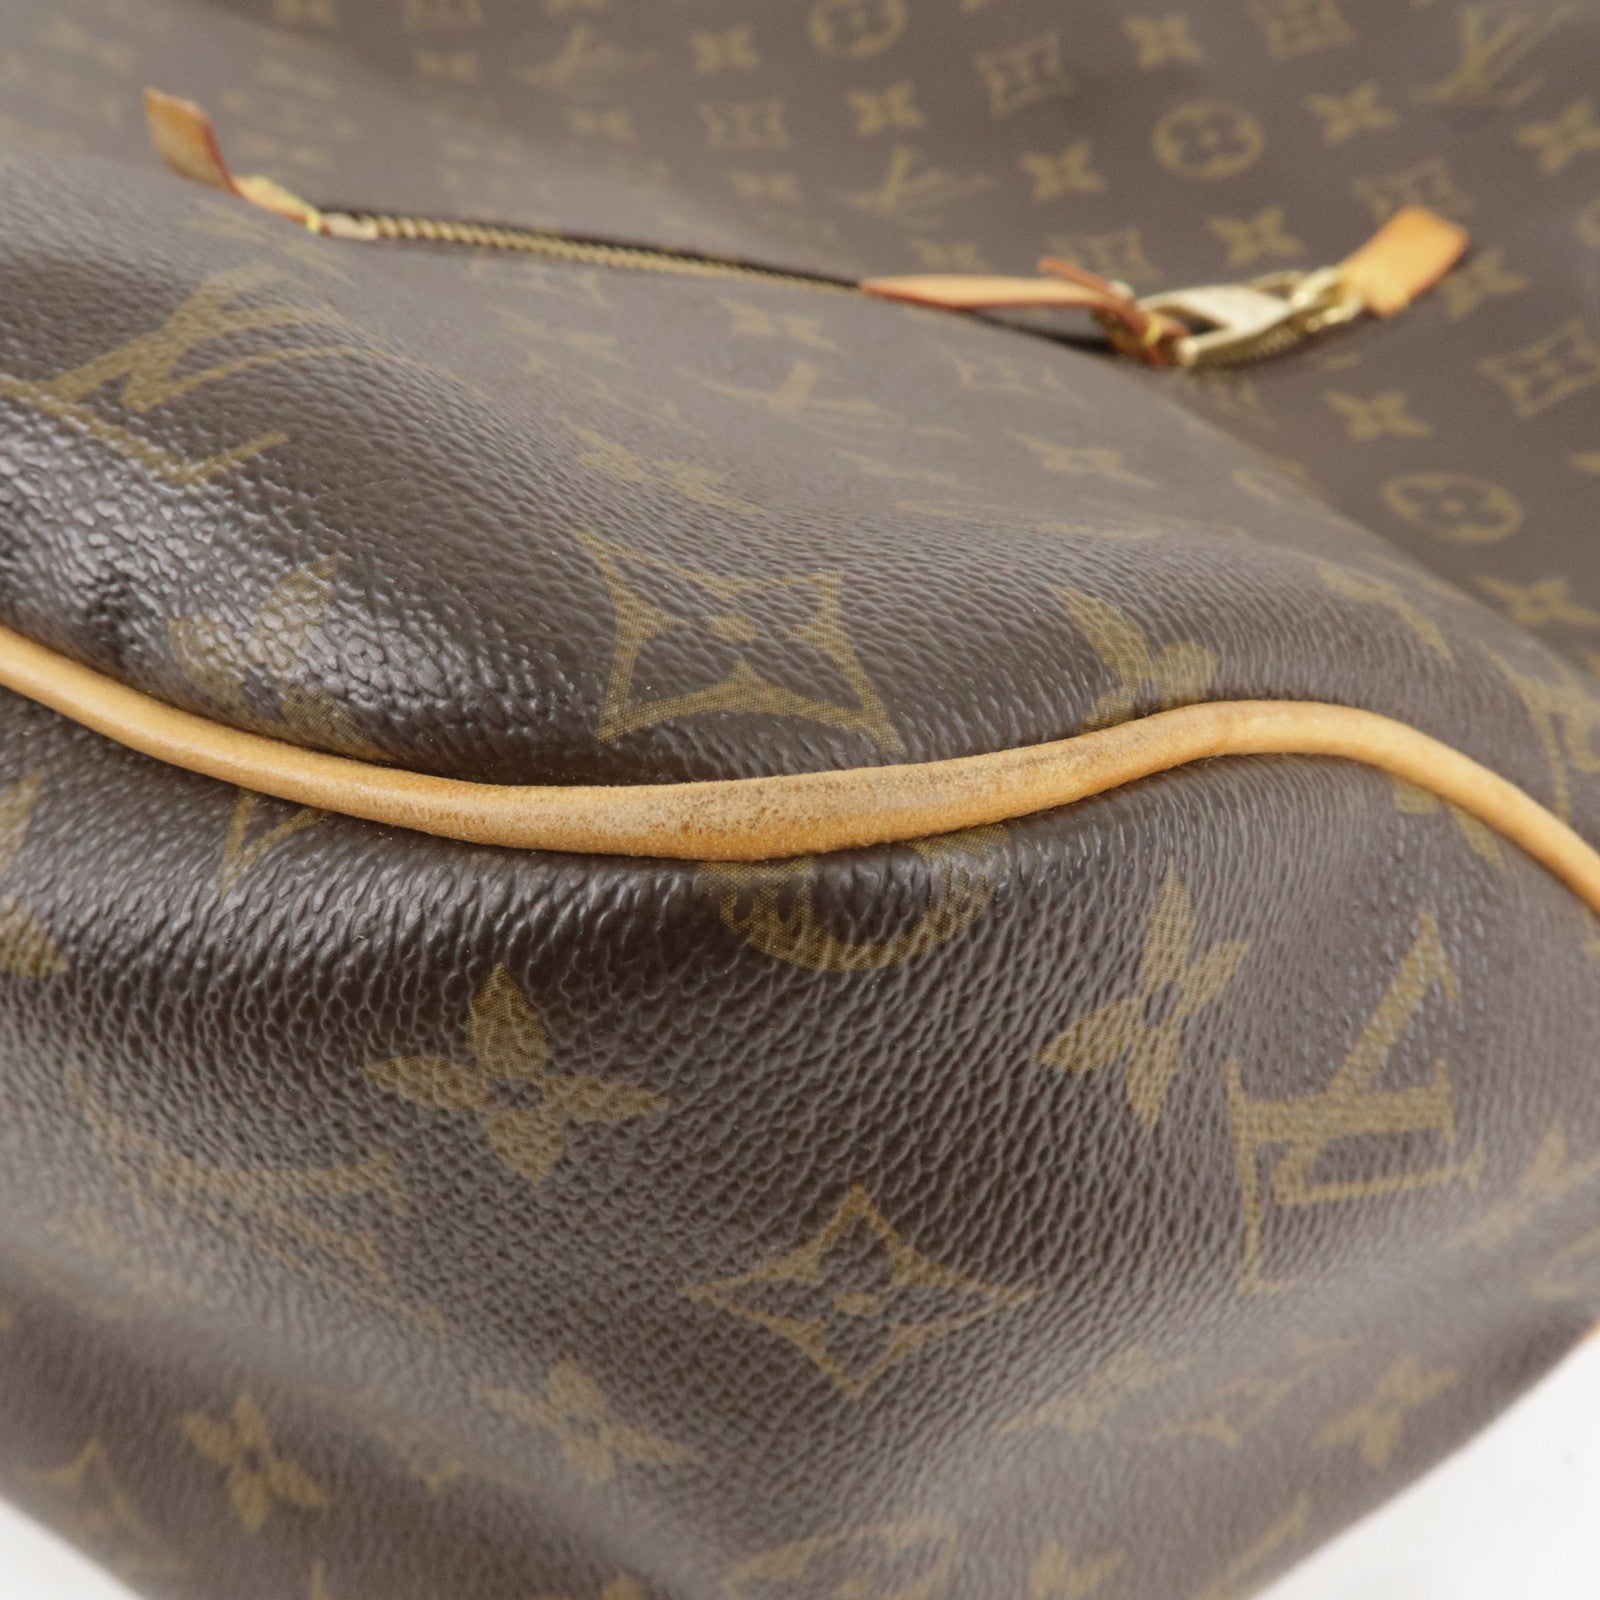 Louis Vuitton, Bags, Louis Vuitton Monogram Delightful Gm